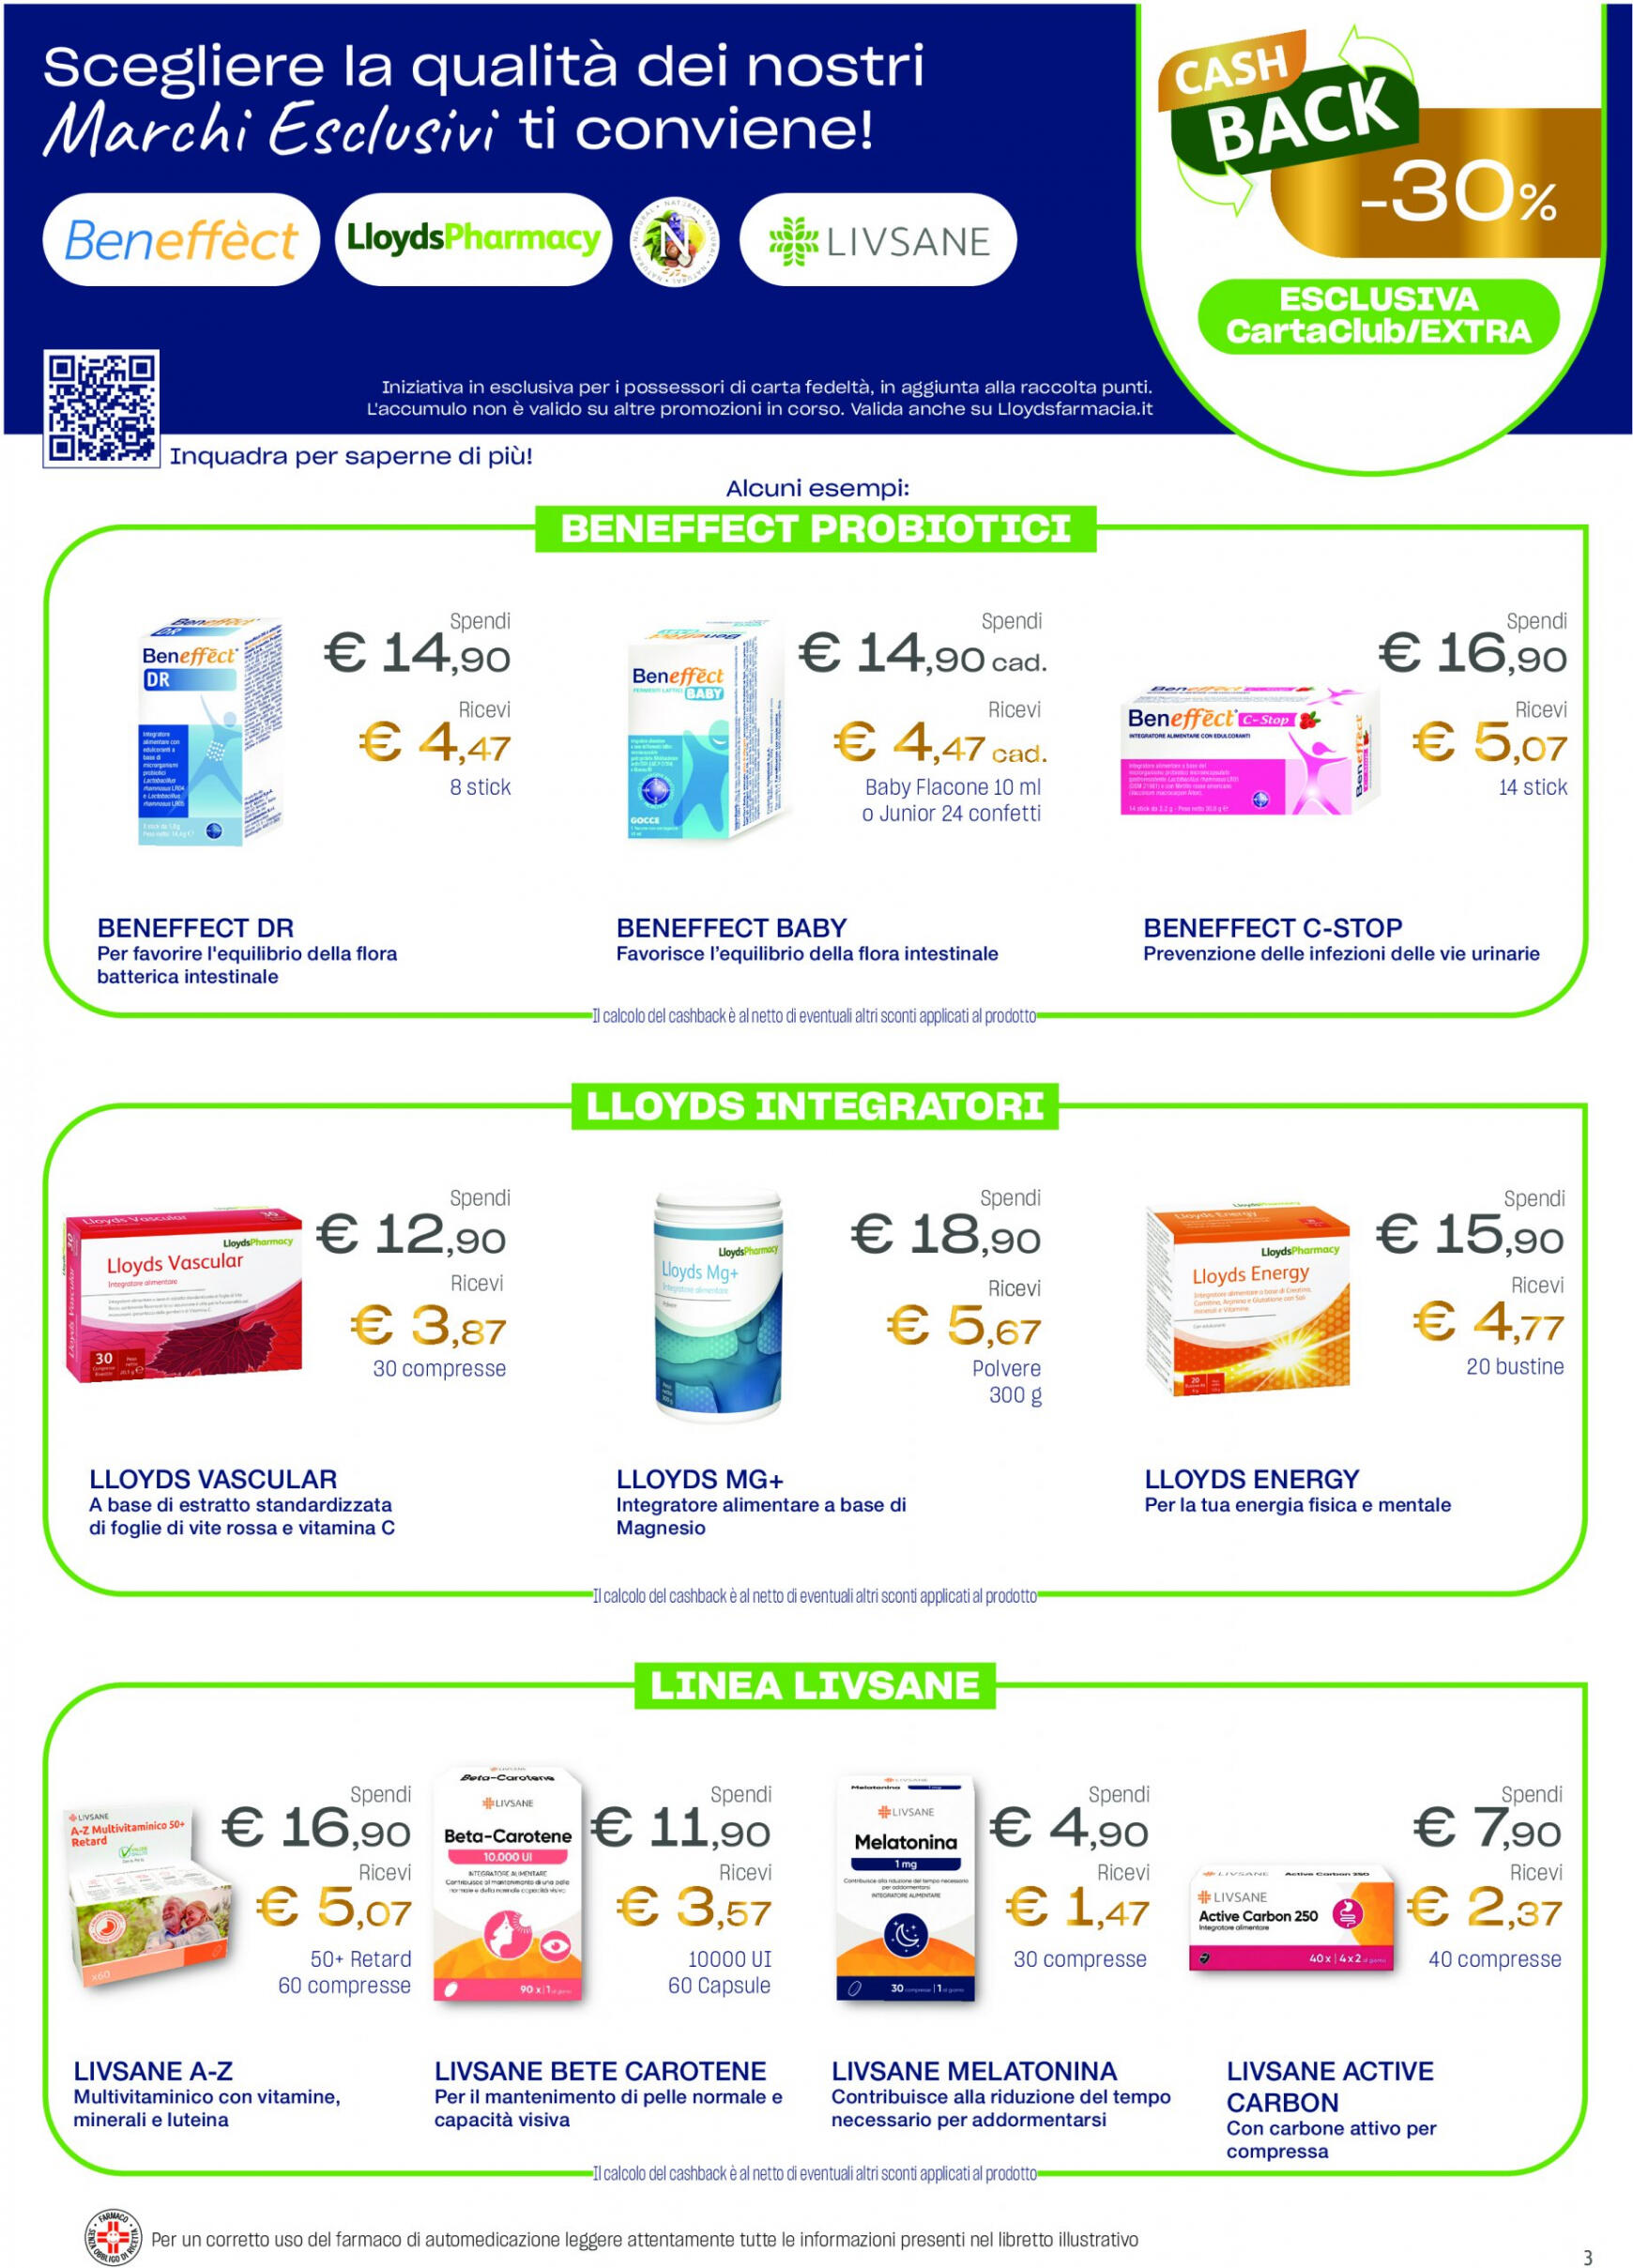 lloyds-farmacia - Nuovo volantino Lloyds Farmacia - Ad aprile metti in agenda la prevenzione! 27.03. - 01.05. - page: 3